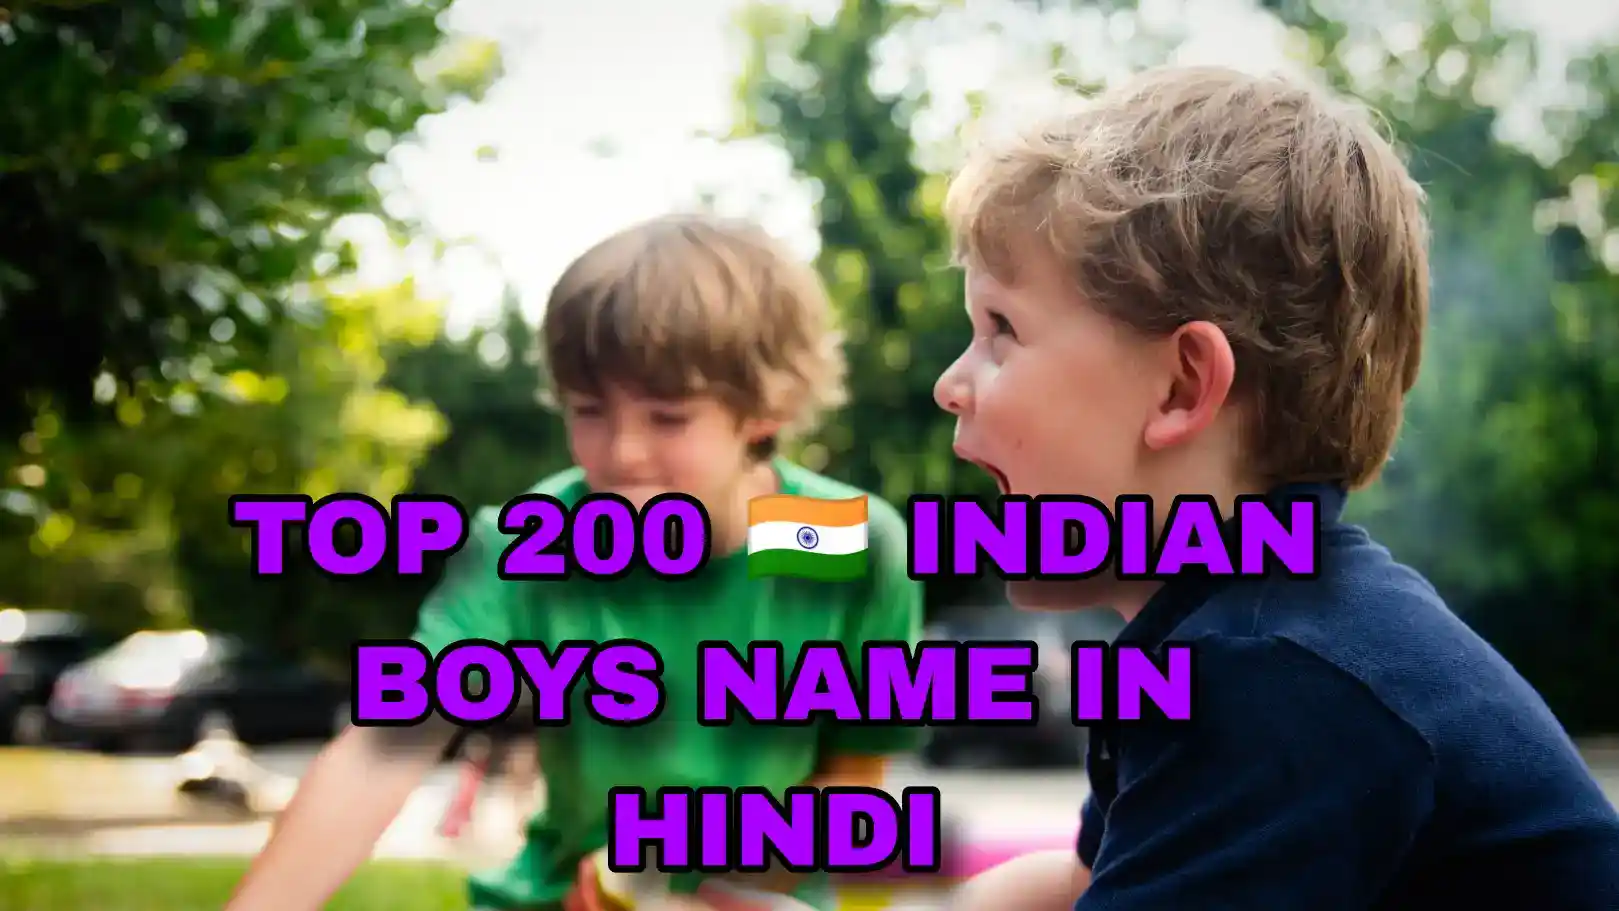 Boys name in hindi